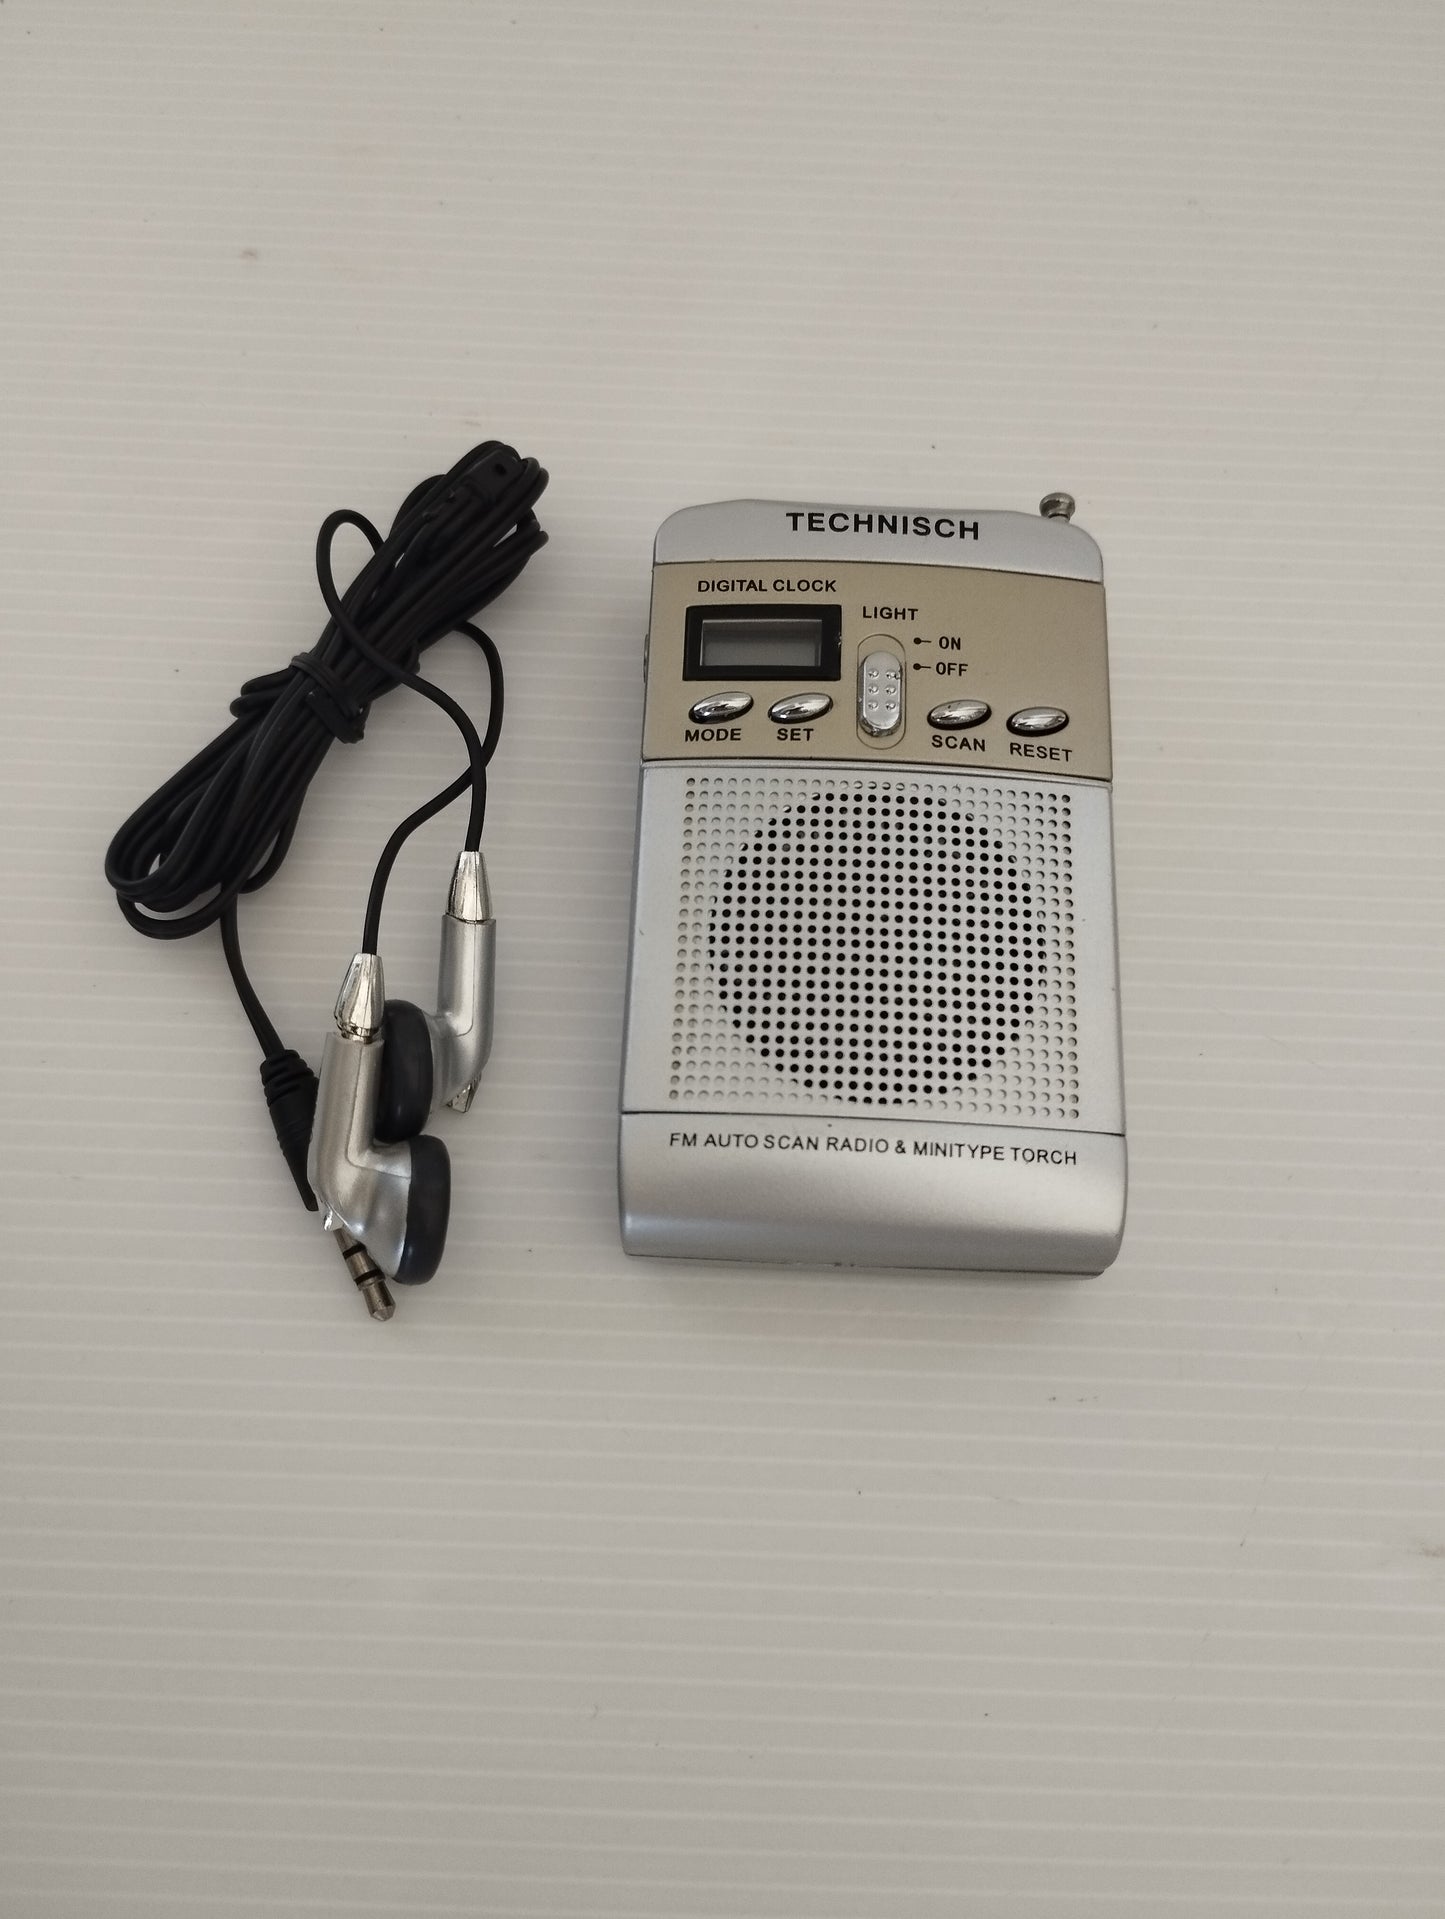 Technisch Mini FM Pocket Radio Con Cuffiette
Radio FM,orologio e luce.